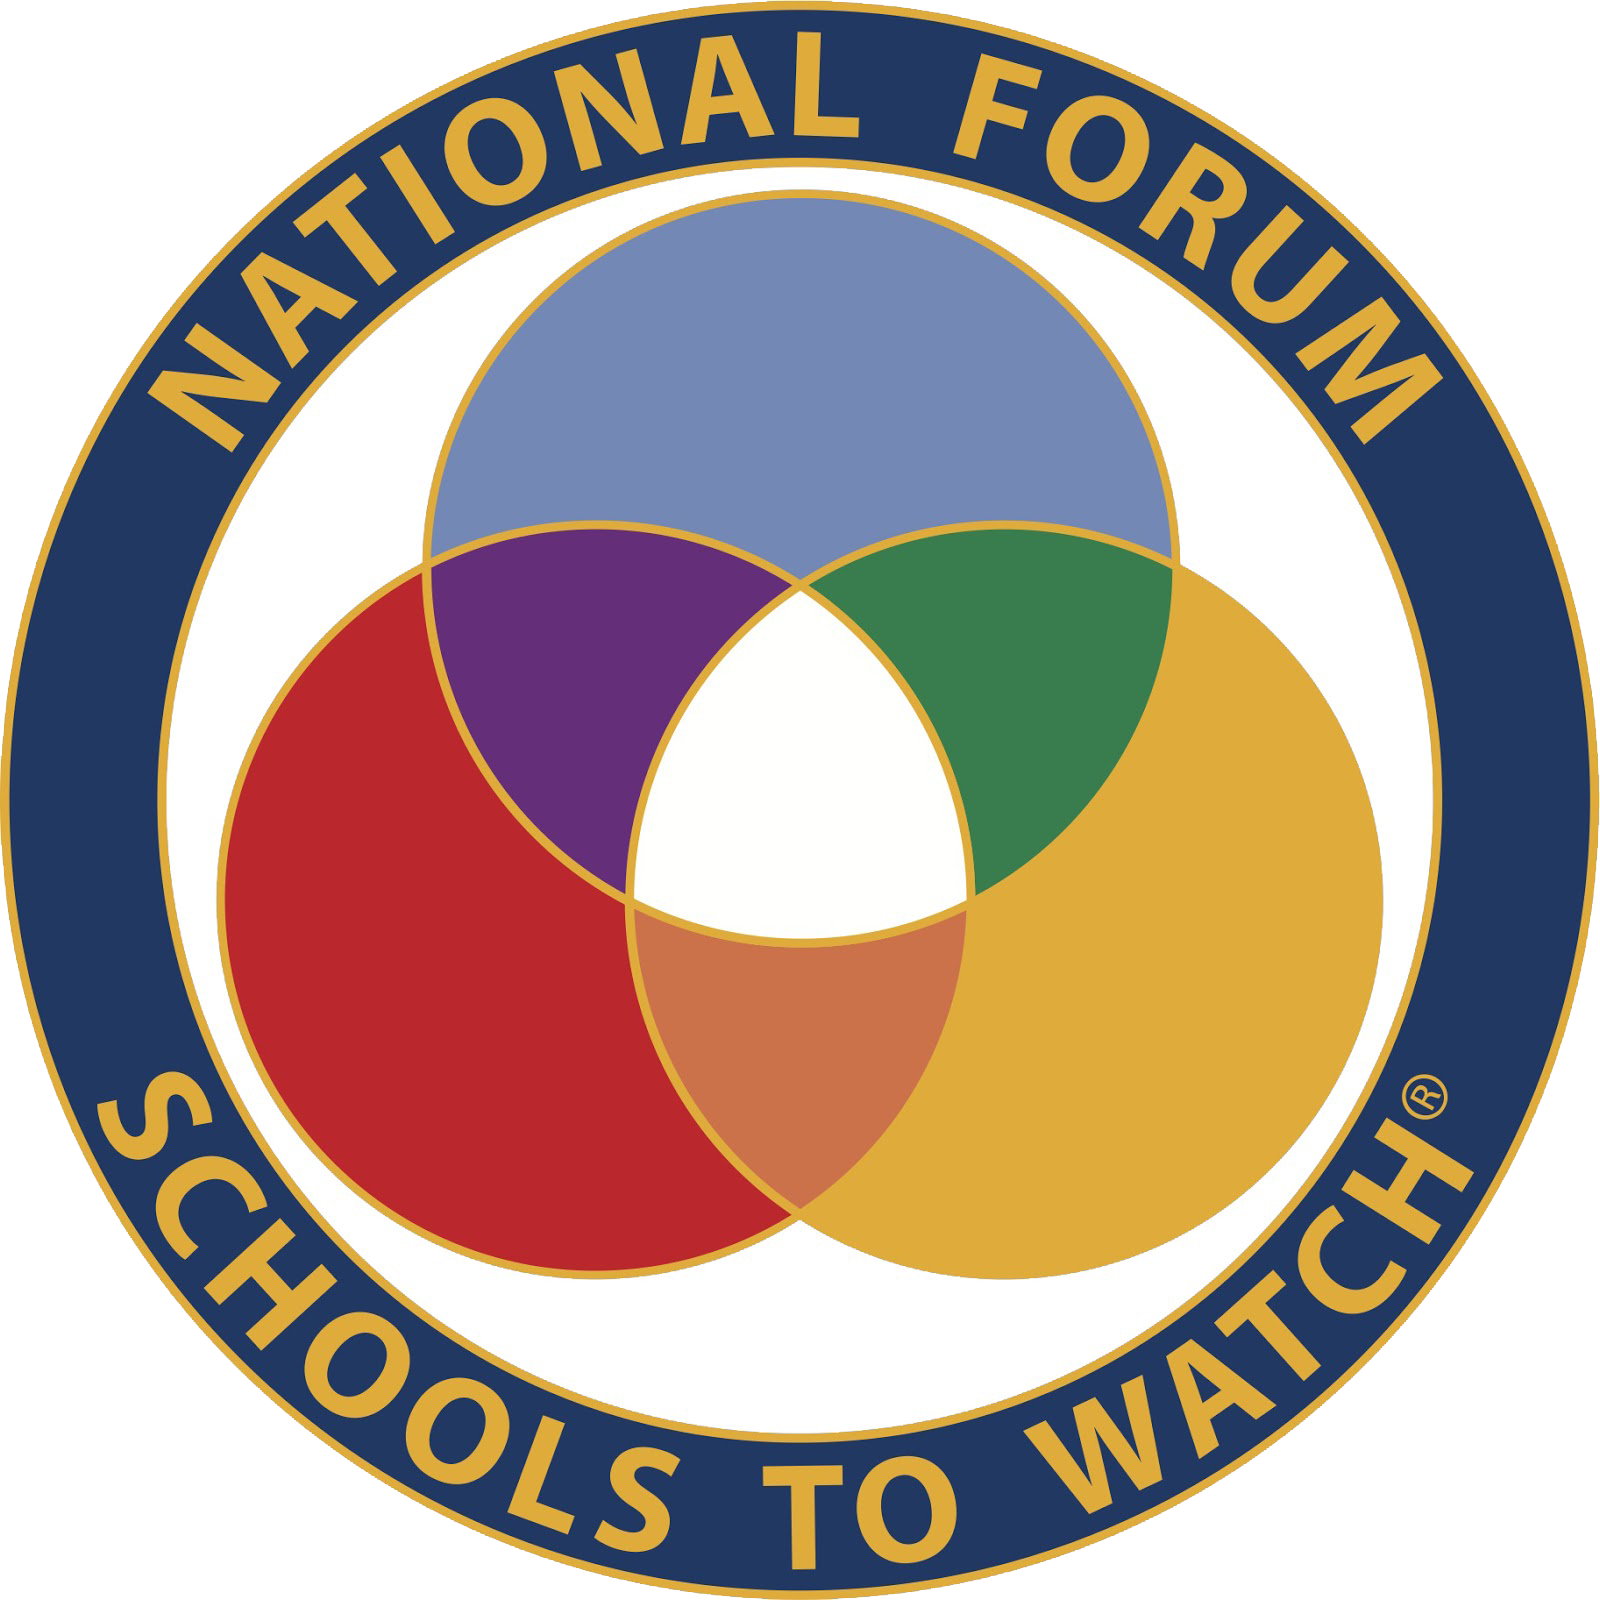 National Forum Schoolsto Watch Logo PNG image